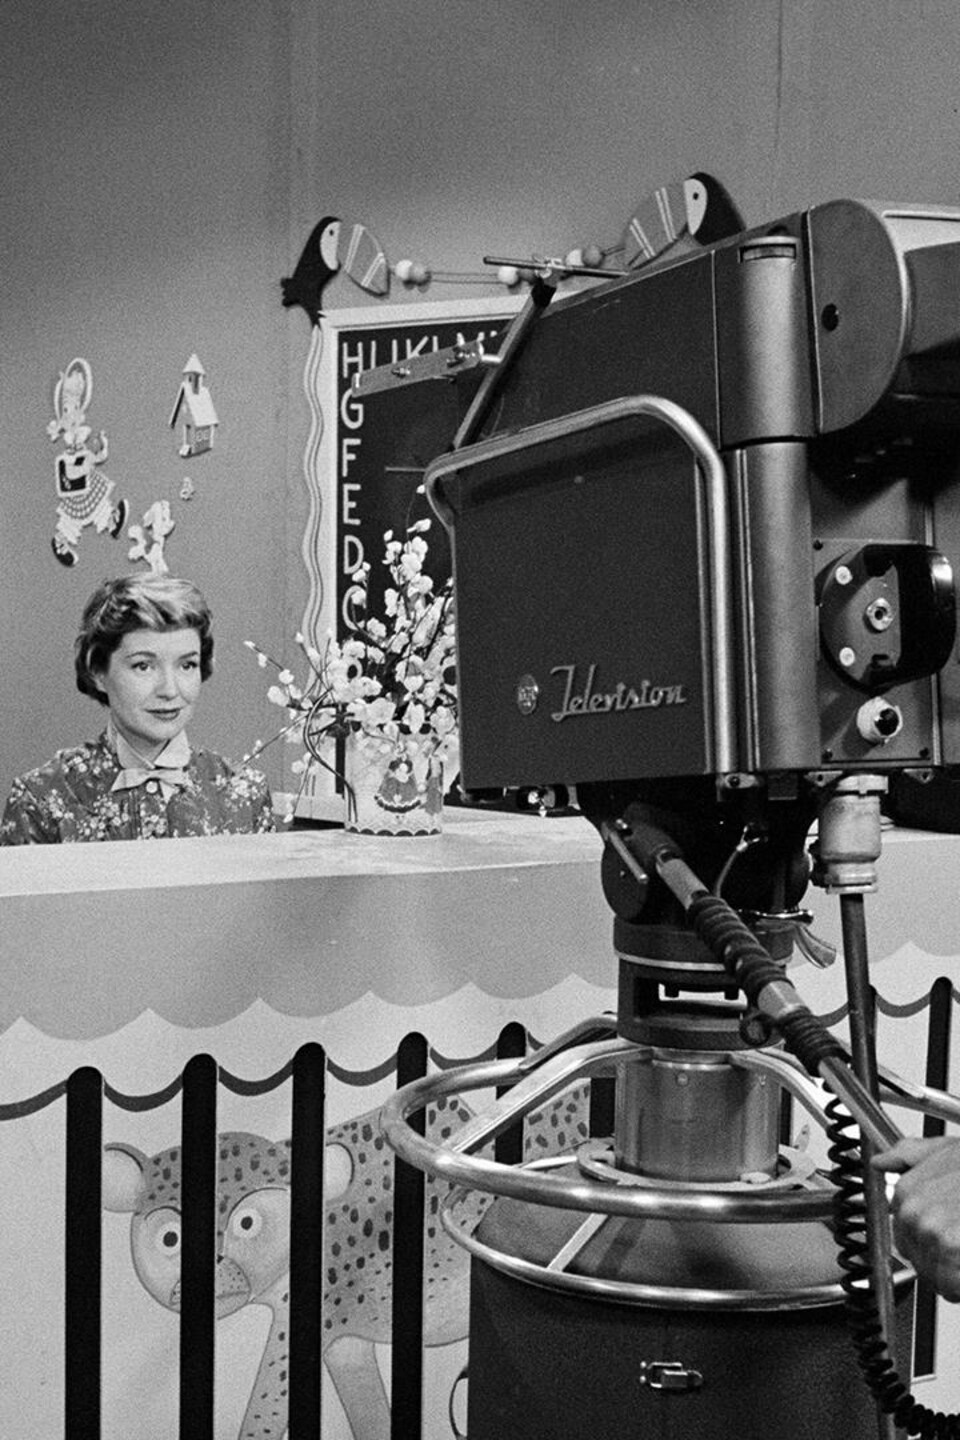 Un caméraman filme l'animatrice Lise Roy, assise derrière un comptoir dans le studio de l'émission jeunesse.